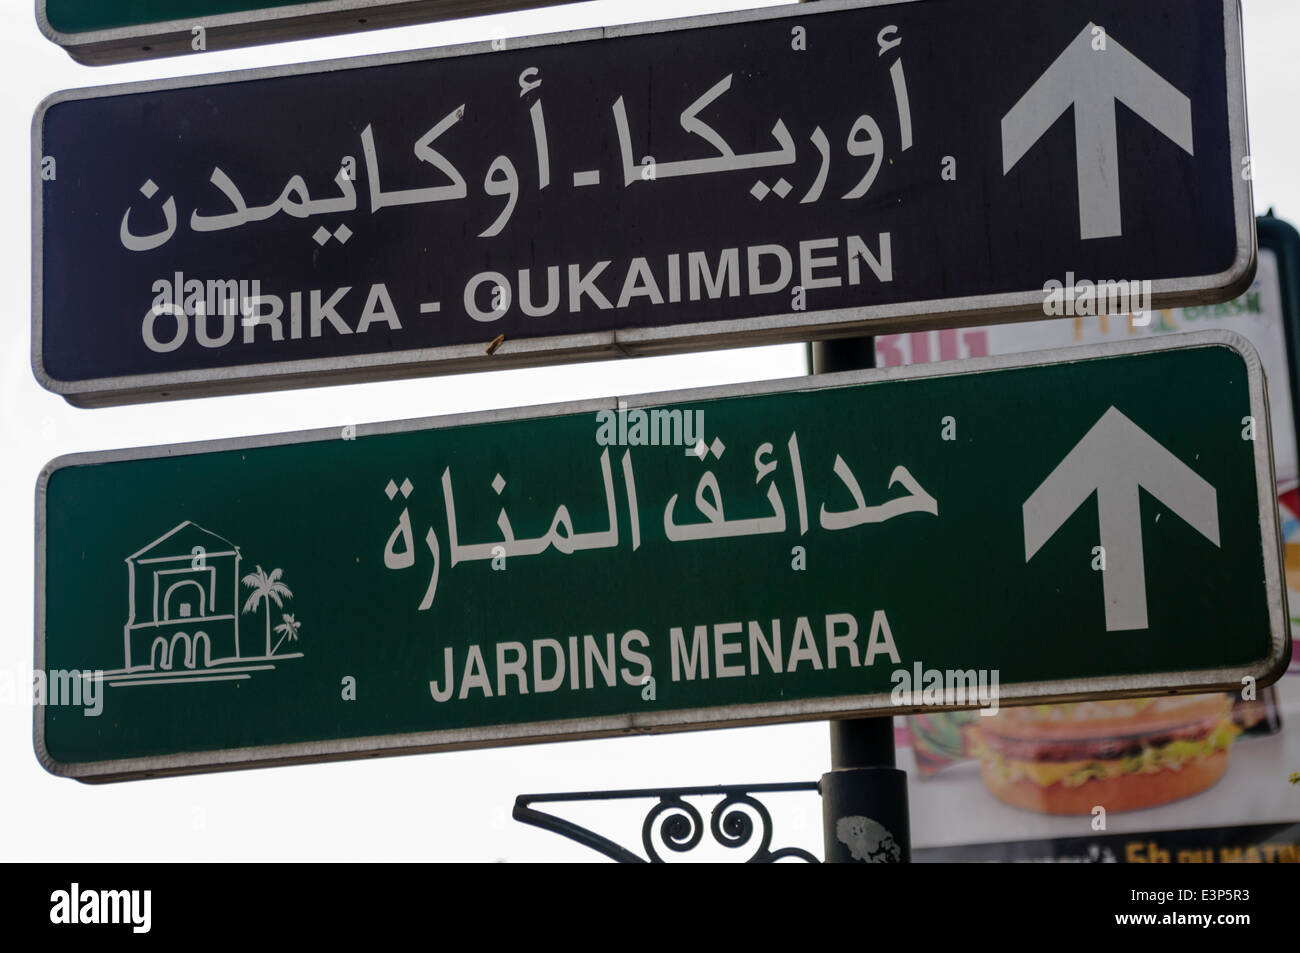 Signs for the Prefecture De Police de Marrakech, and the Jardins Menara, Marrakech, Morocco Stock Photo